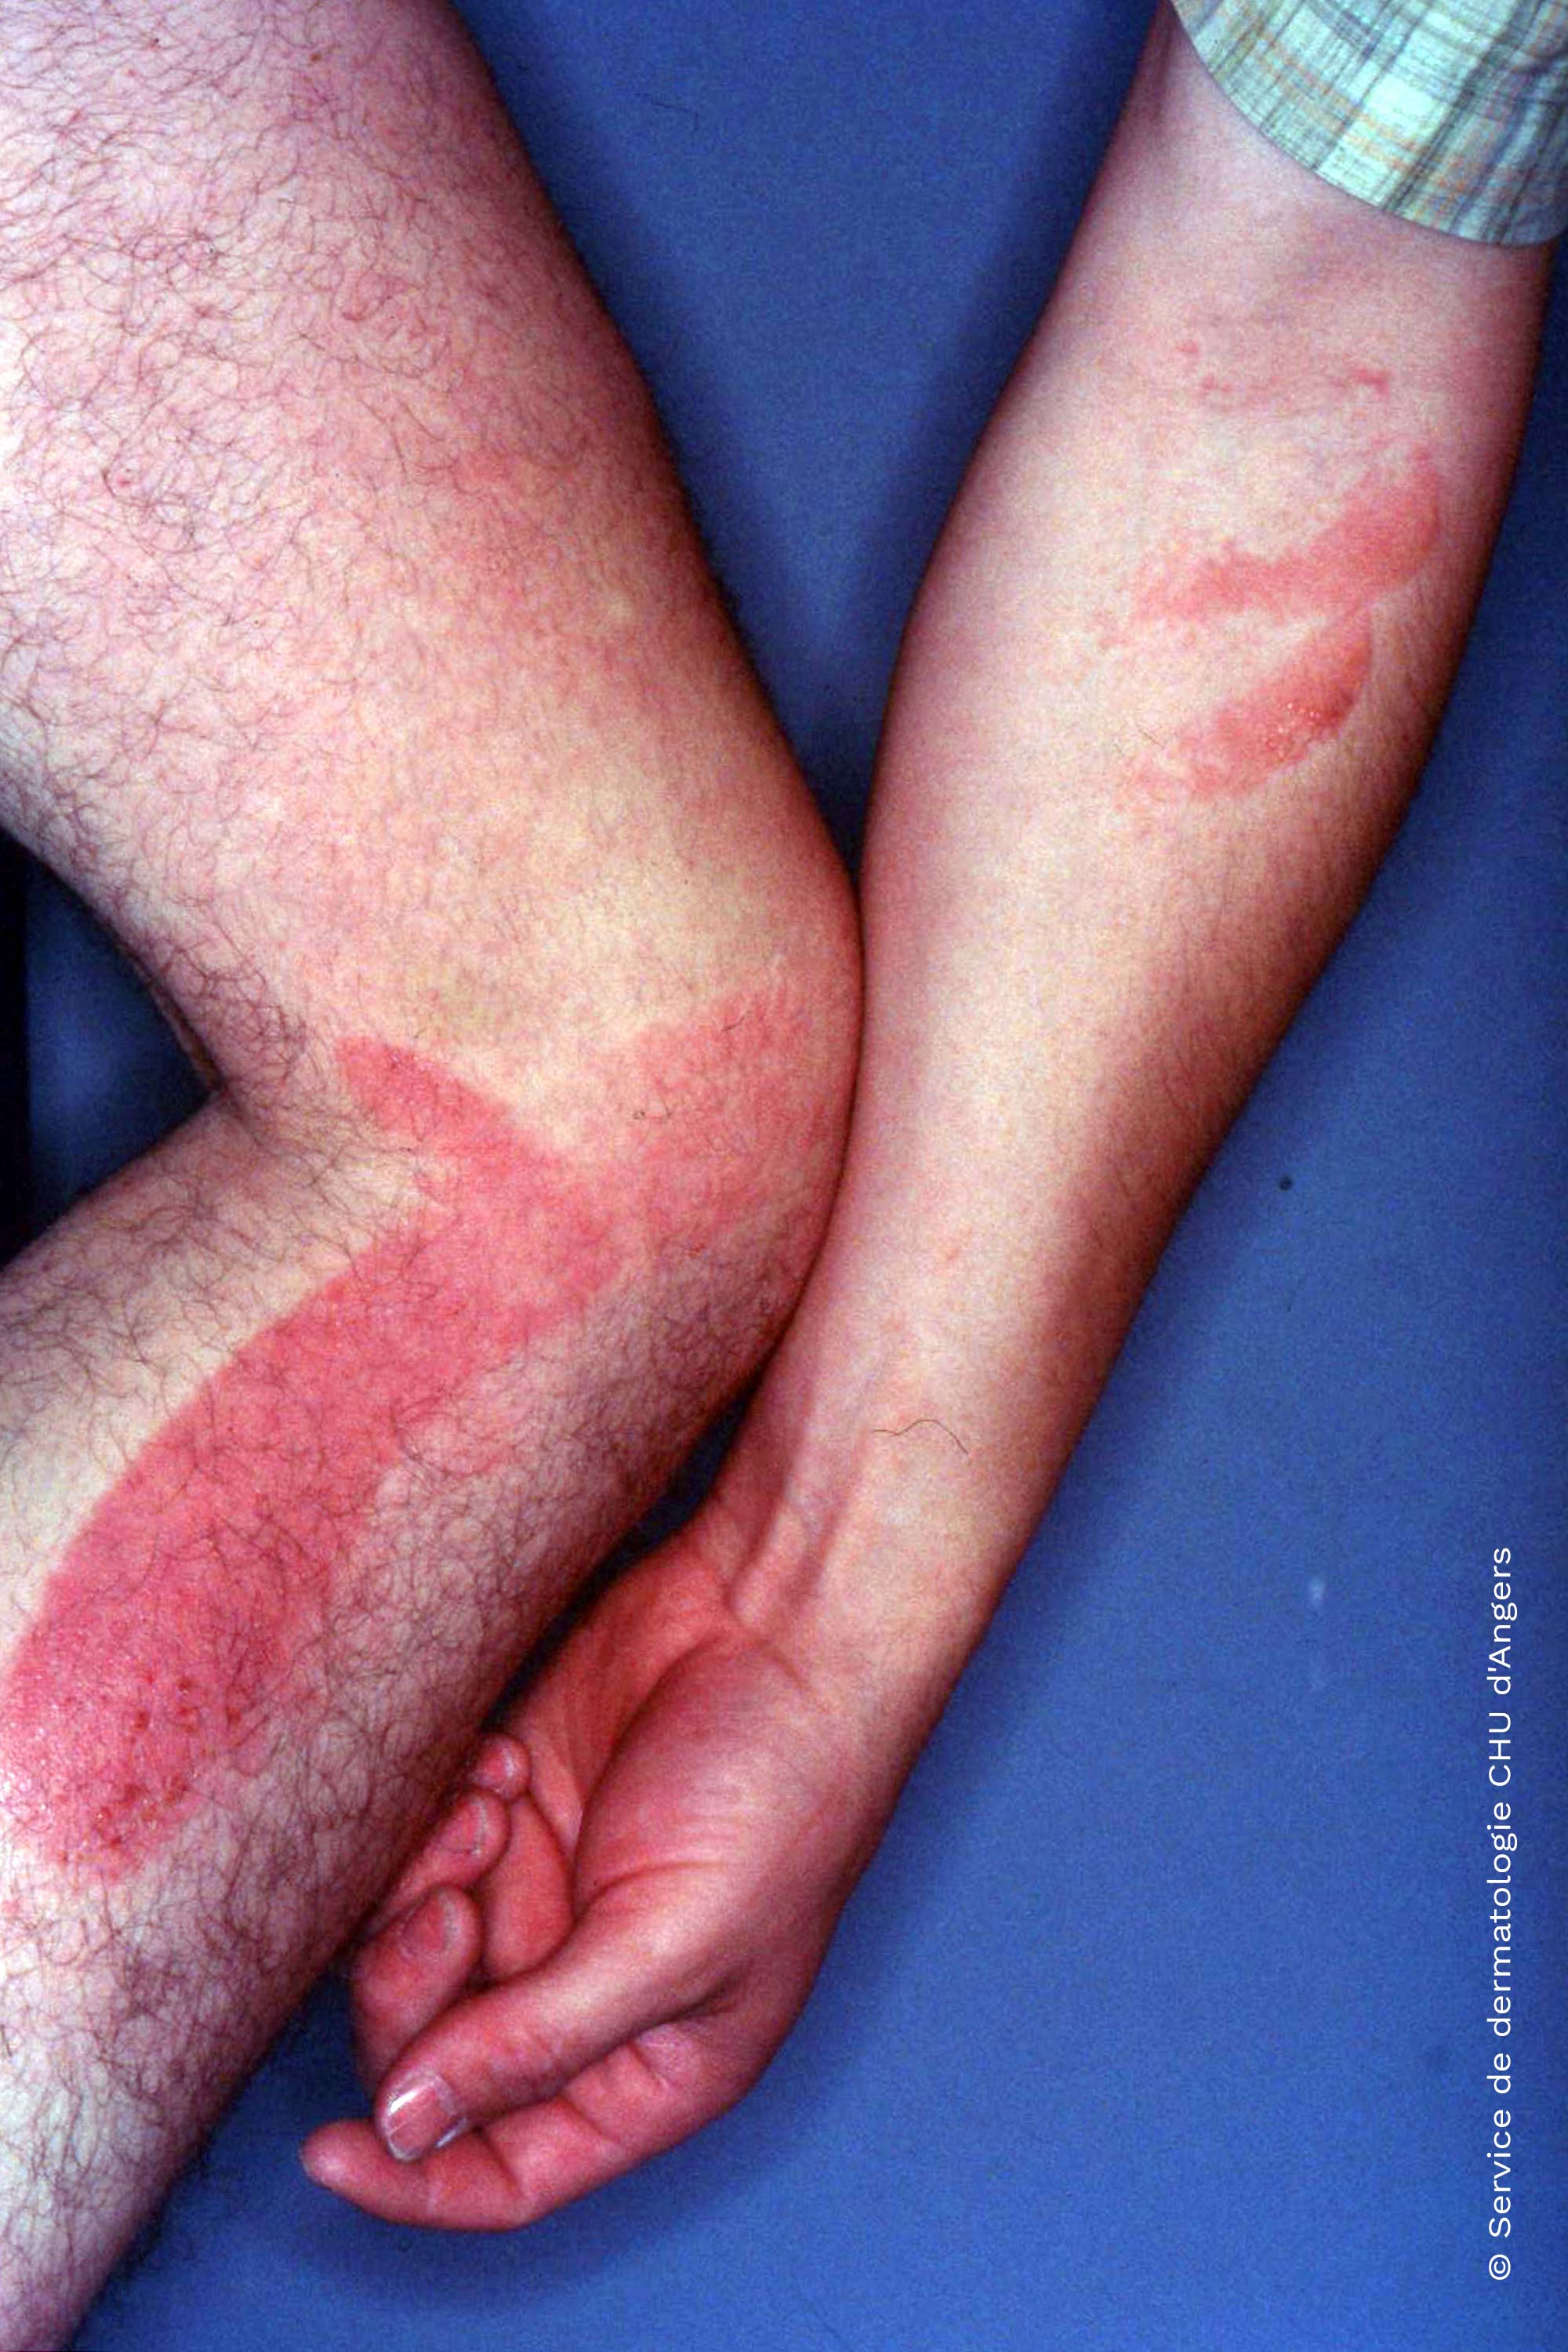 Eczema - trasmissione attraverso le mani - da ketoprofene